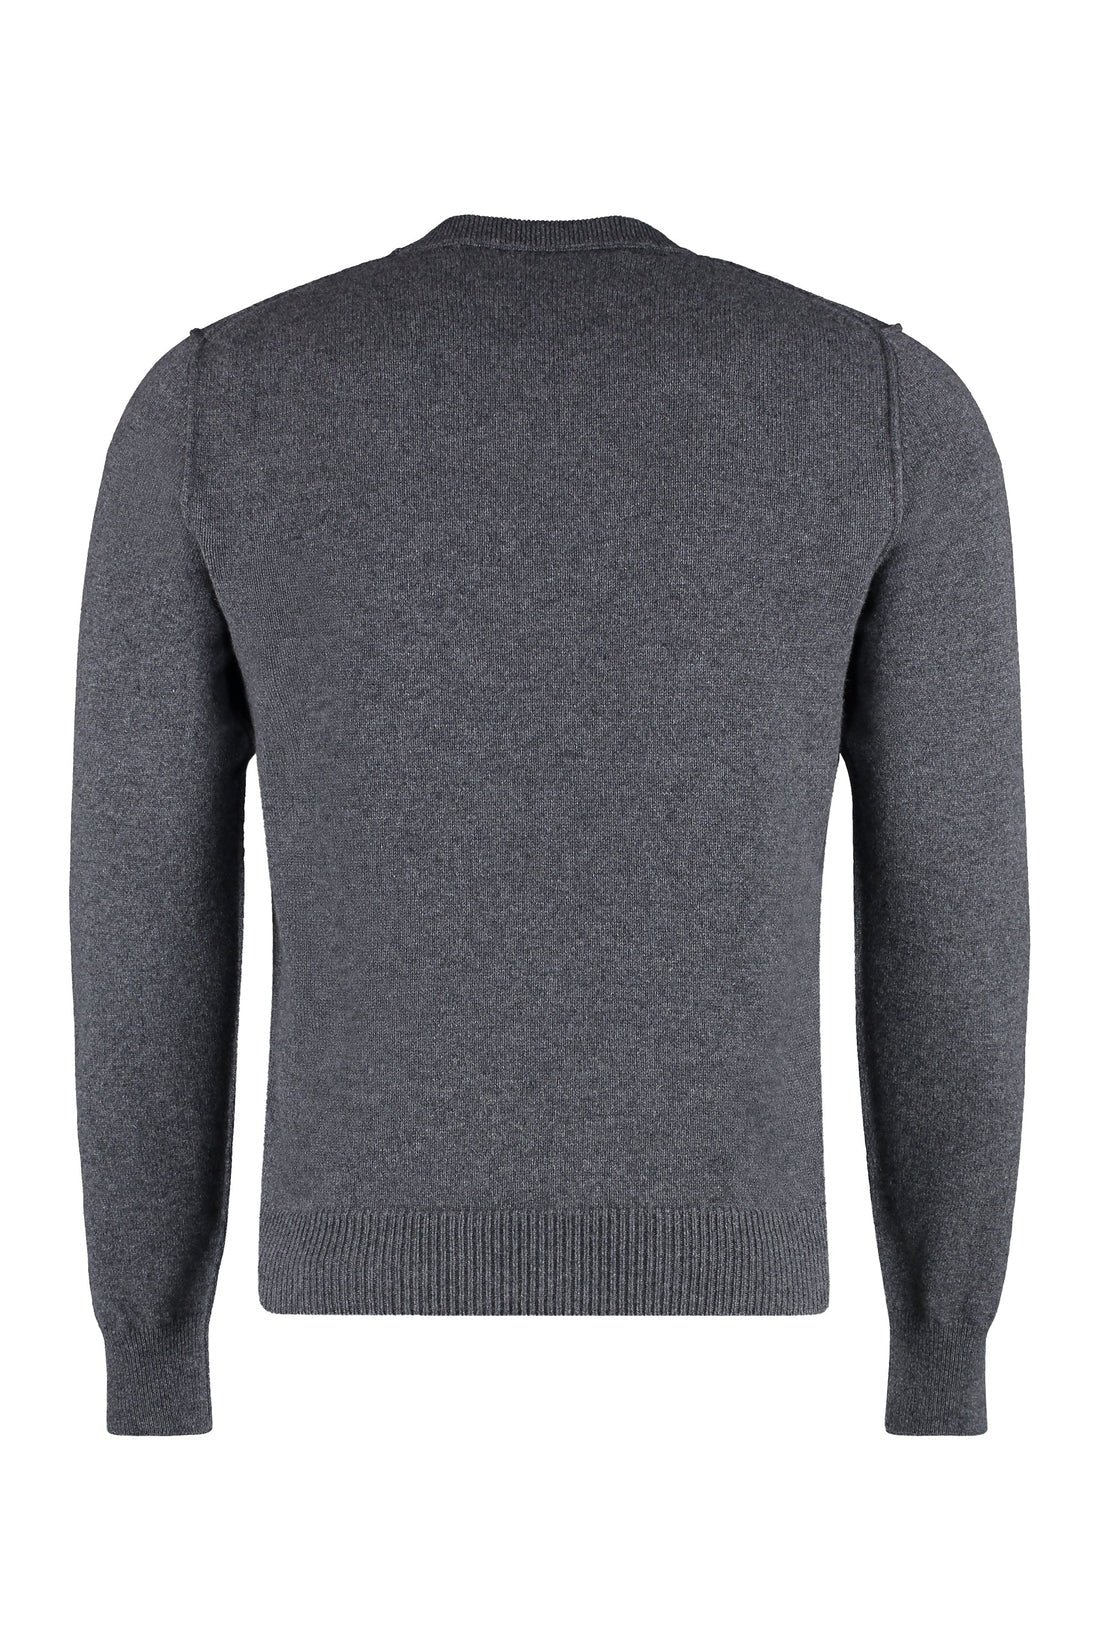 Maison Margiela-OUTLET-SALE-Cashmere sweater-ARCHIVIST